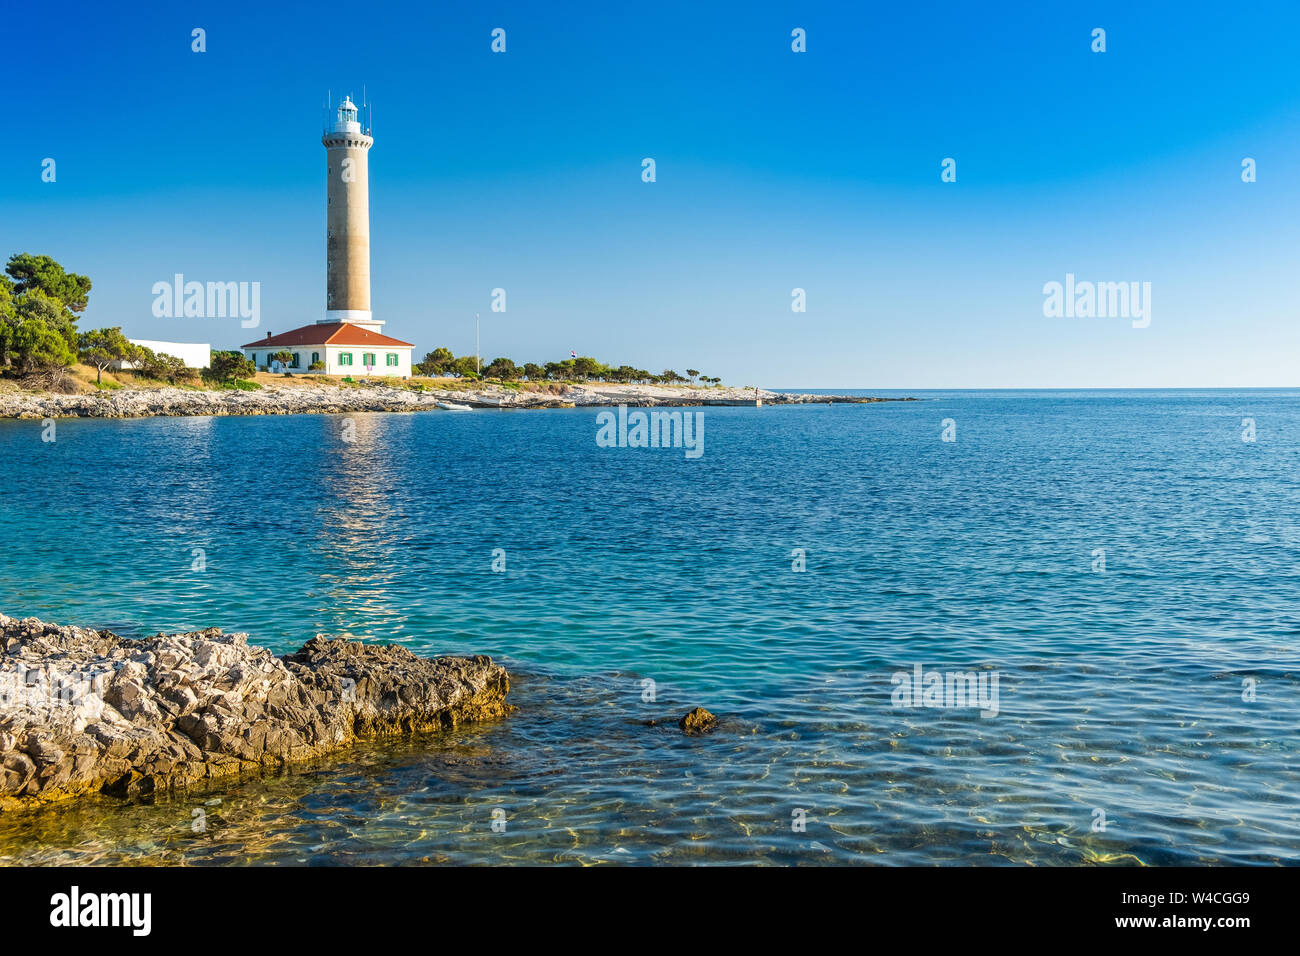 La Croatie, l'île de Dugi Otok, ancien phare de Veli Rat sur la rive en pierre, belle seascape Banque D'Images